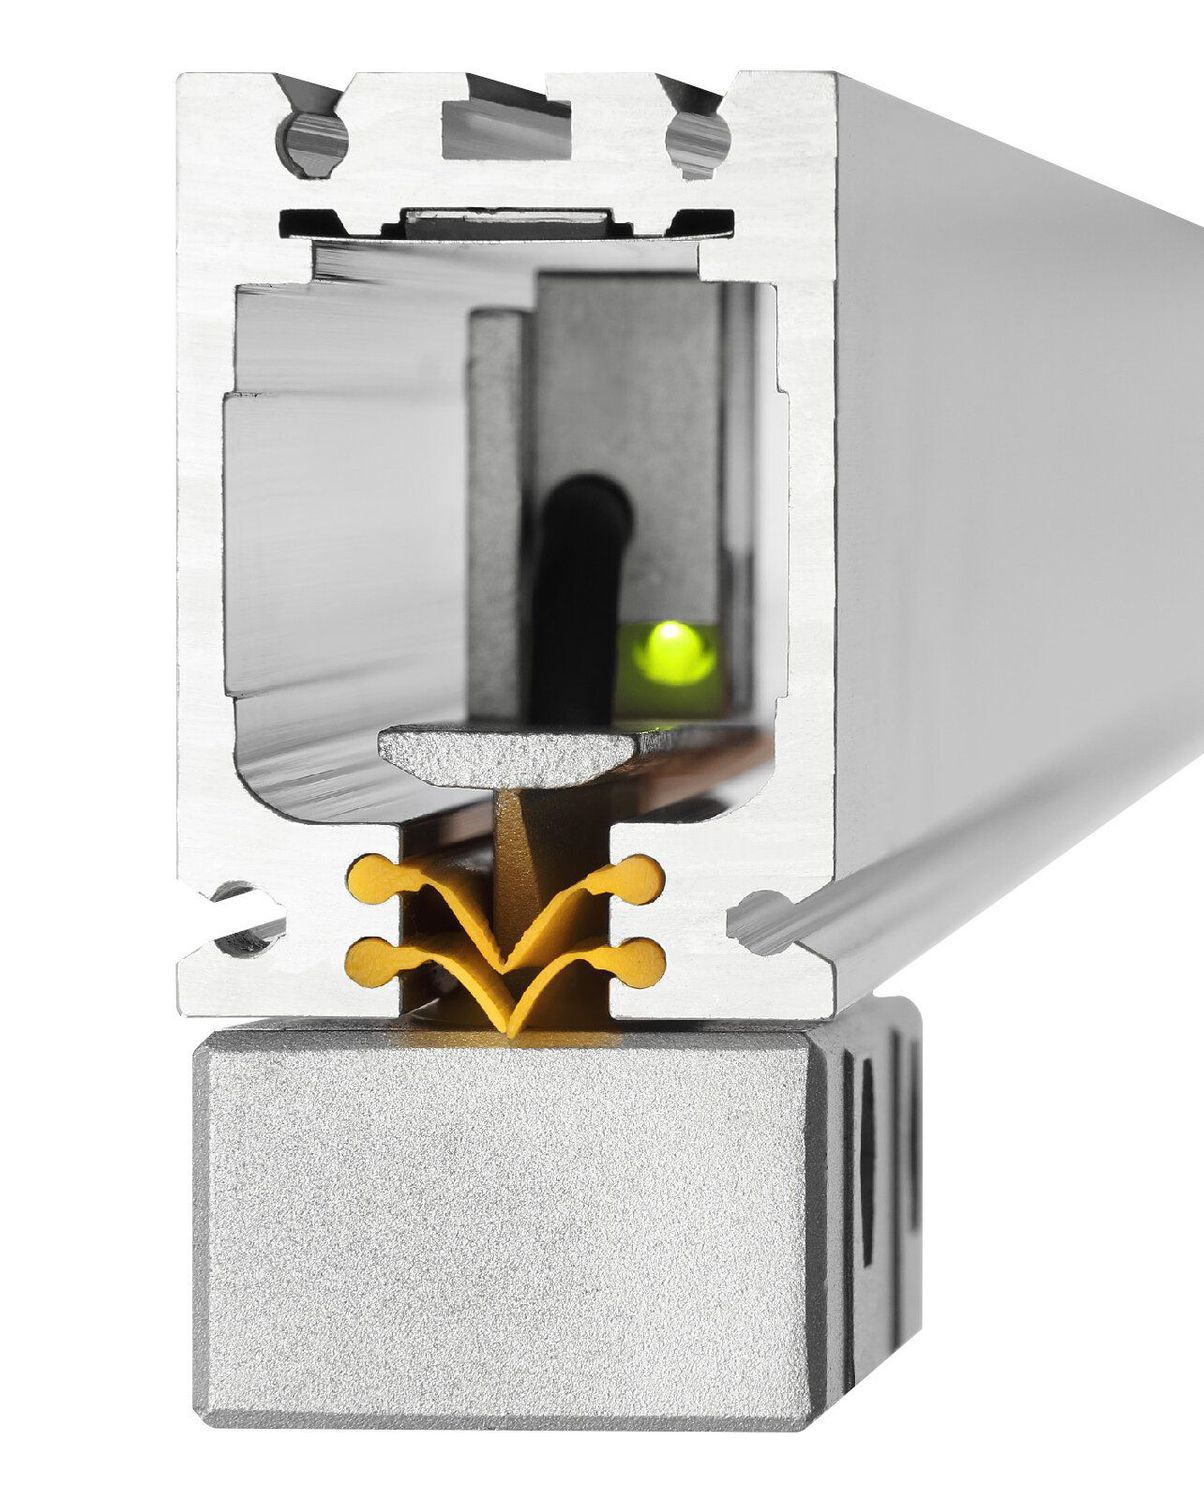 K+C Magnetmaßstab MSX 50 mm - 5 µm | Verfahrweg 60 mm